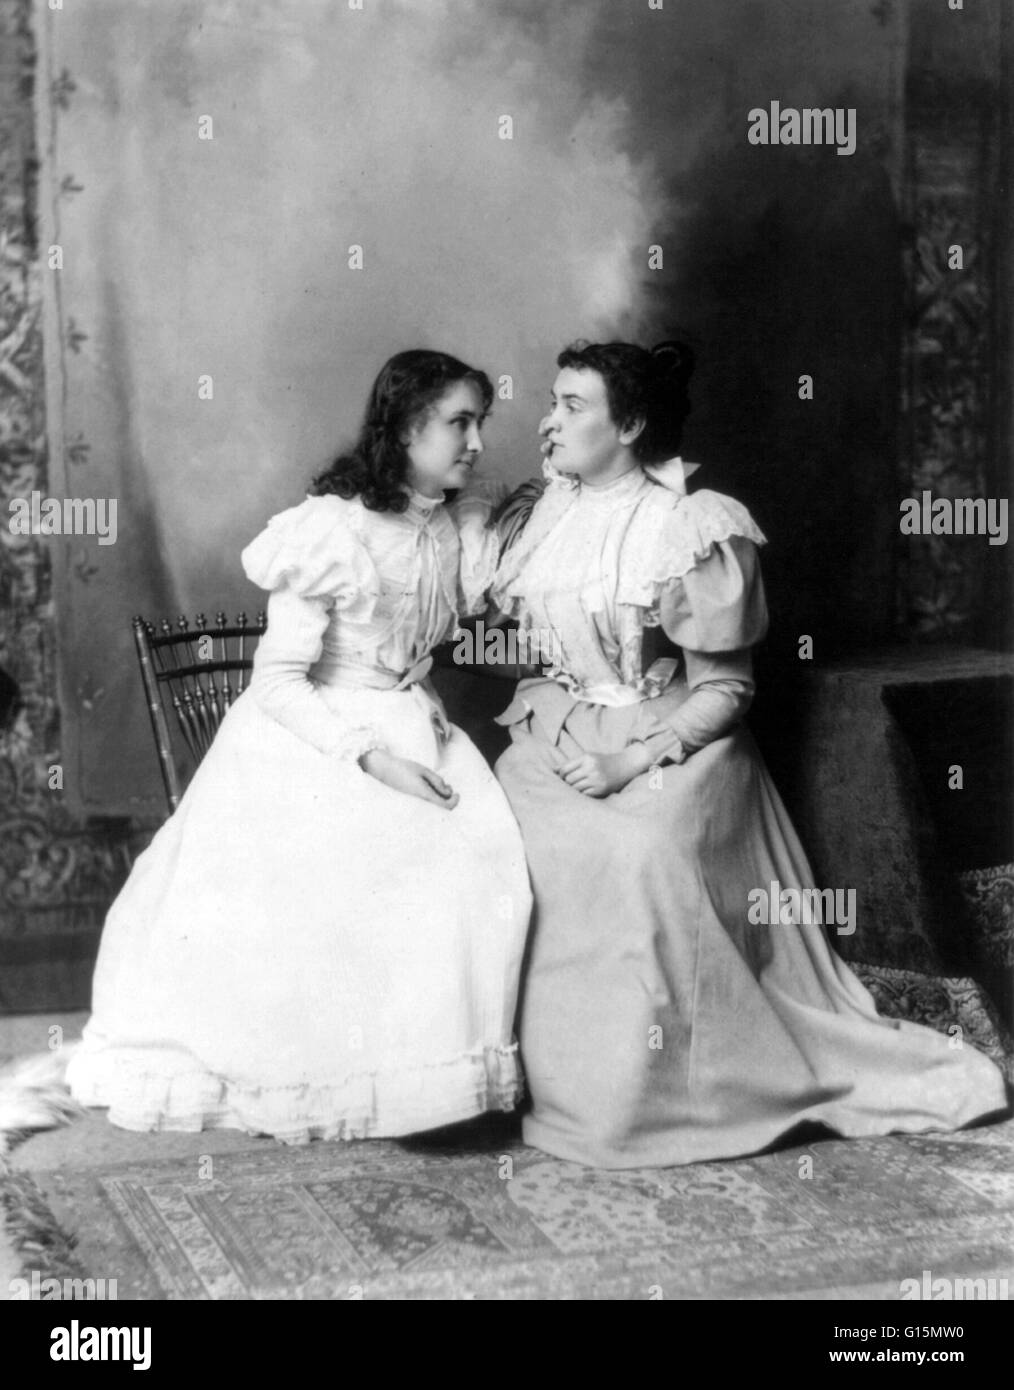 Helen Keller e Anne Sullivan, 1897. Helen Adams Keller (Giugno 27, 1880 - Giugno 1, 1968) era un autore americano, attivista politico, e docente. Aveva 19 mesi quando ha contratto una malattia che potrebbe essere stata scarlattina o meningite, che Foto Stock